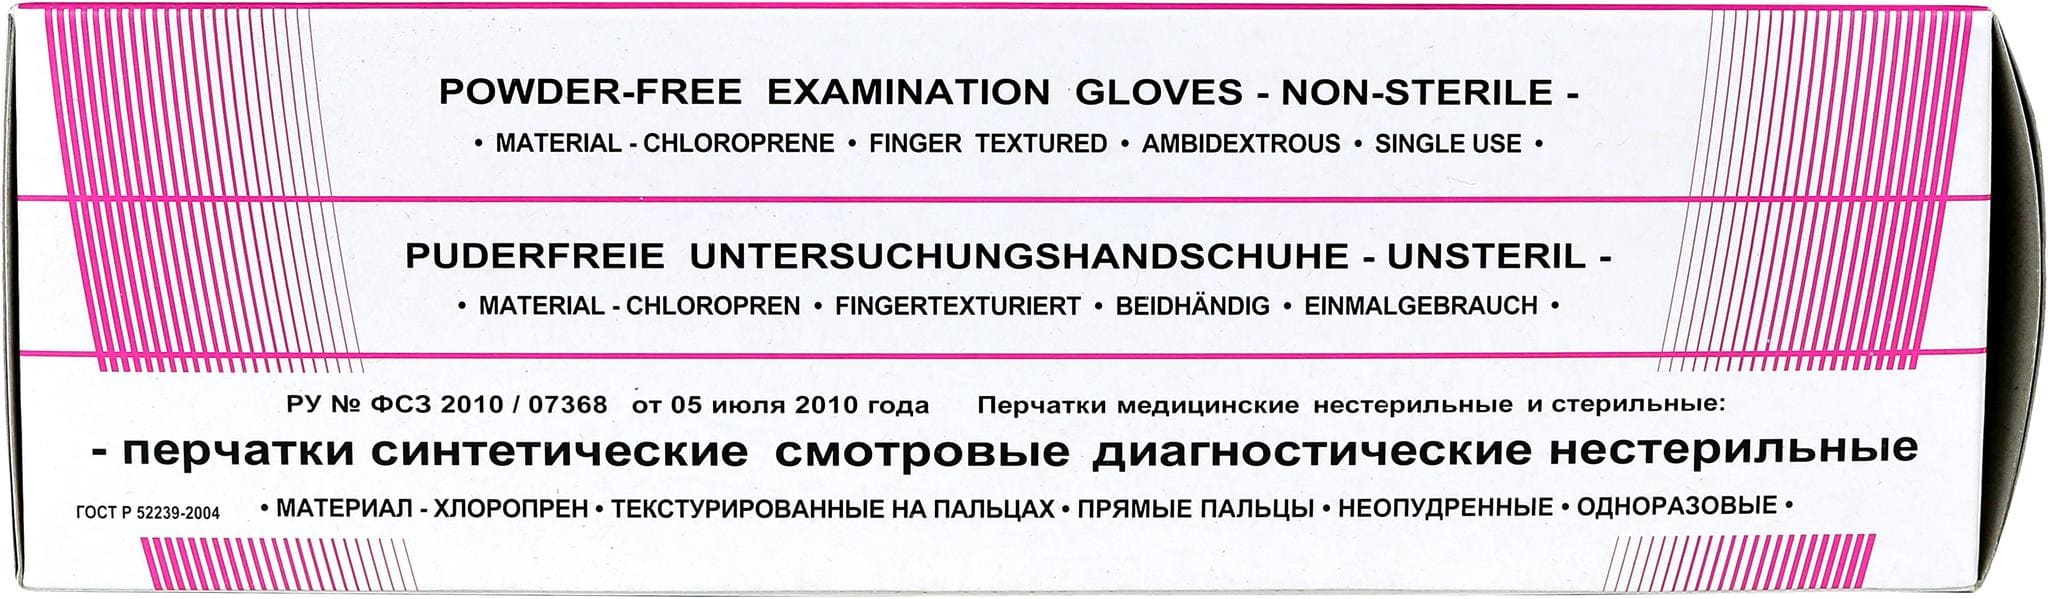 Перчатки ХЛОРОПРЕНОВЫЕ (24,5см) нестер. неопудр. текстур. на пальцах (SFM,Германия)